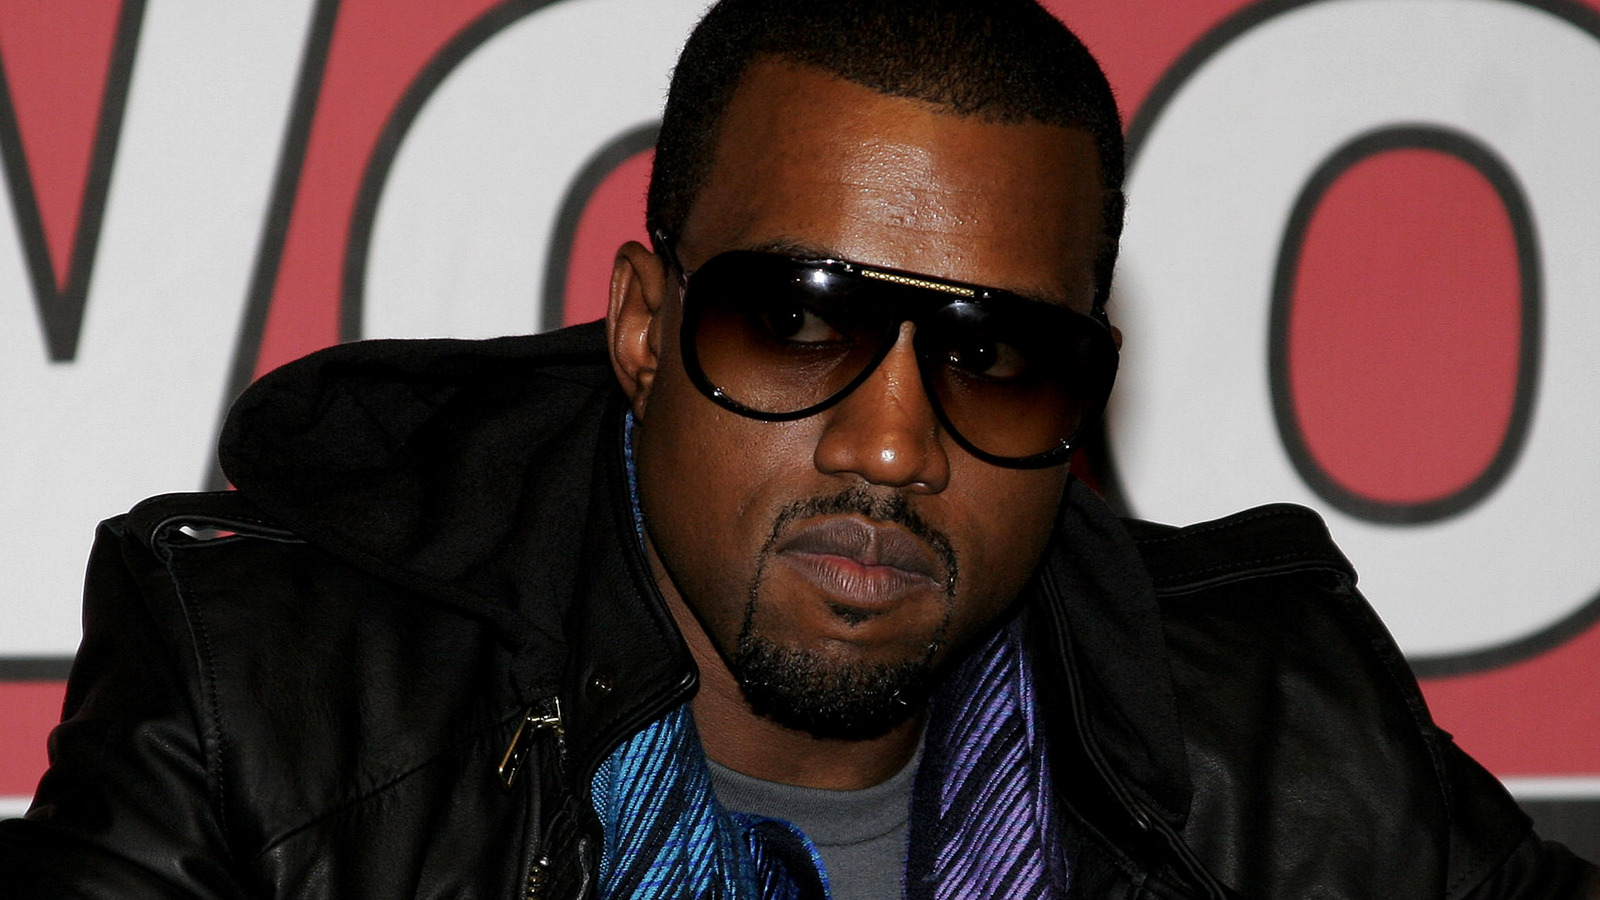 Swerve Strickland de AEW compara un aspecto de su persona con Kanye West